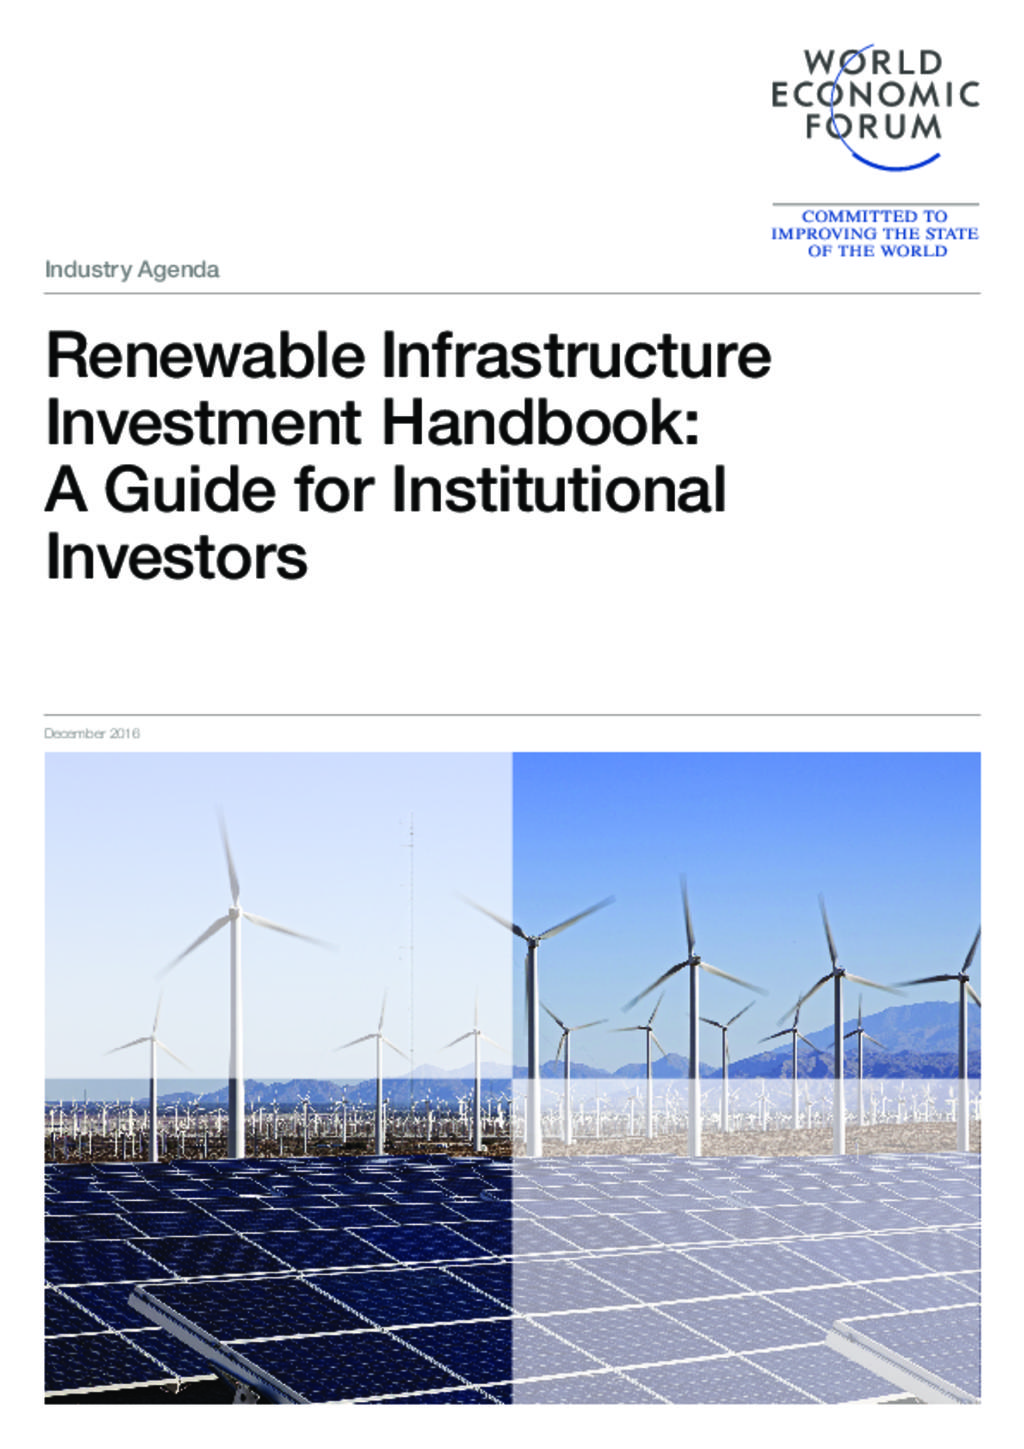 Renewable Infrastructure Investment Handbook